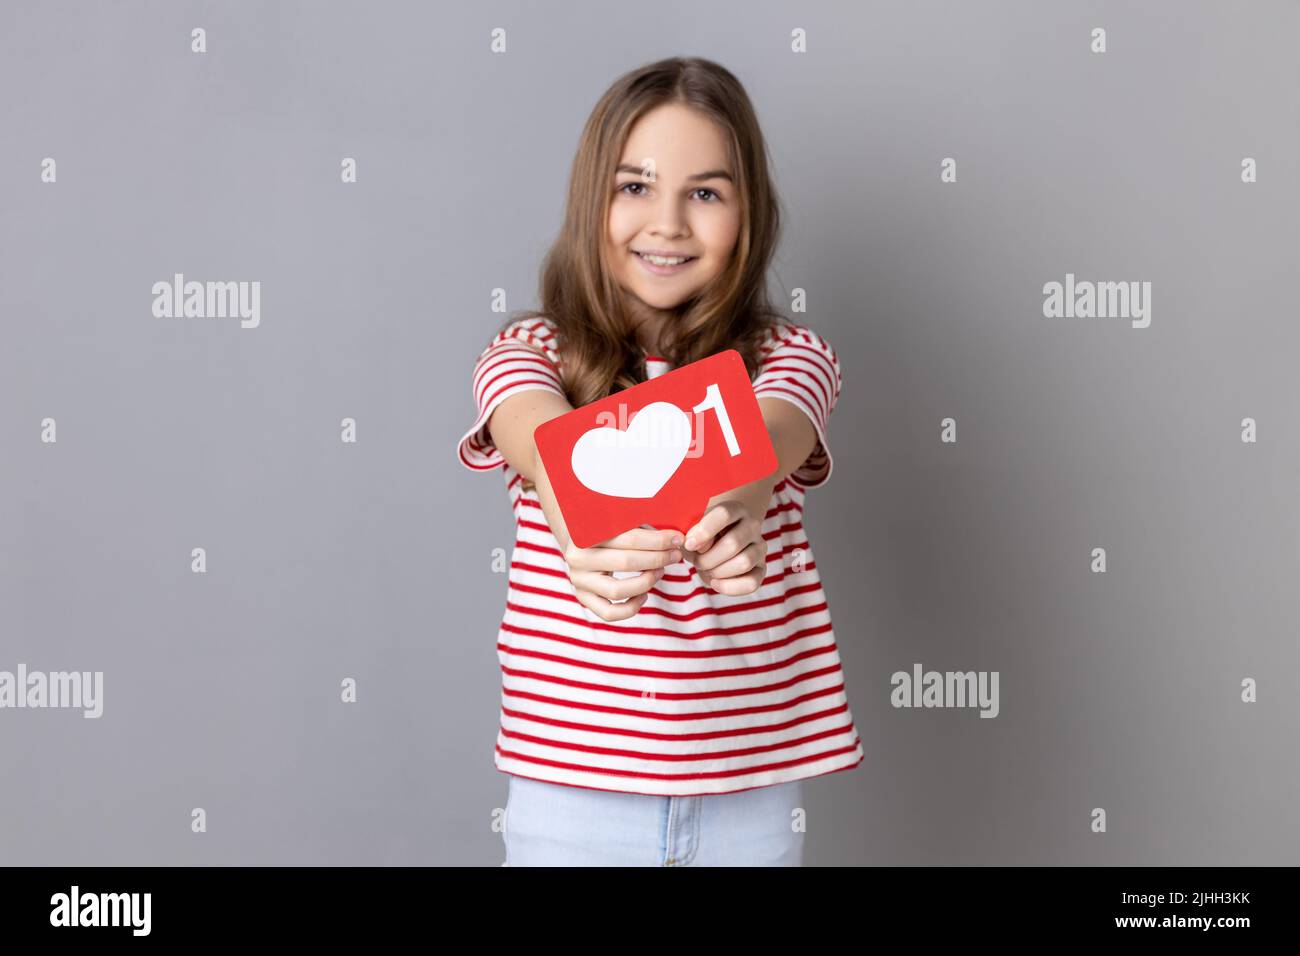 Ritratto di una bambina sorridente che indossa una T-shirt a righe che mostra un'icona a forma di cuore dei social media e guarda la fotocamera con un sorriso carino. Studio interno girato isolato su sfondo grigio. Foto Stock